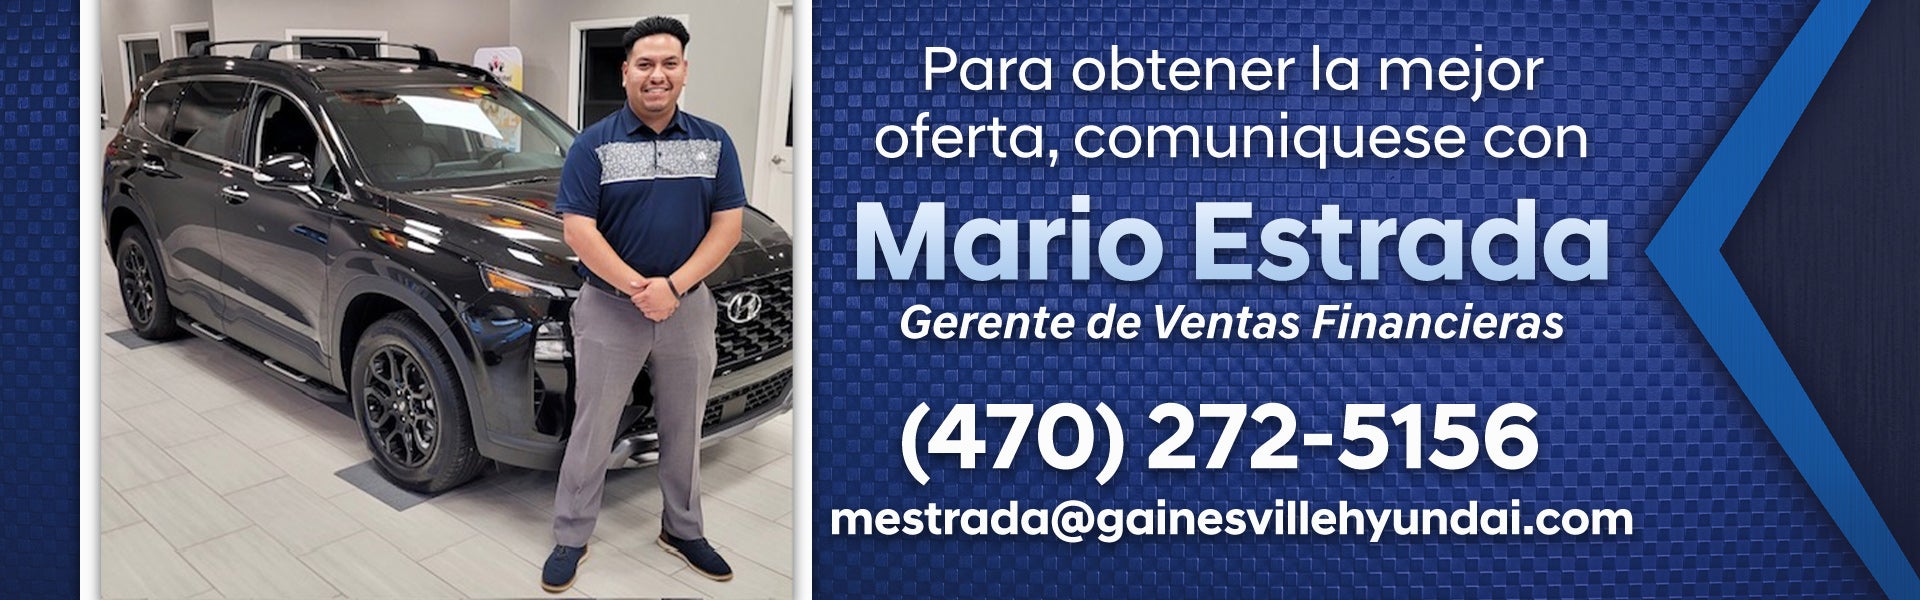 Para obtener la mejor oferta, comuniquese con Mario Estrada 